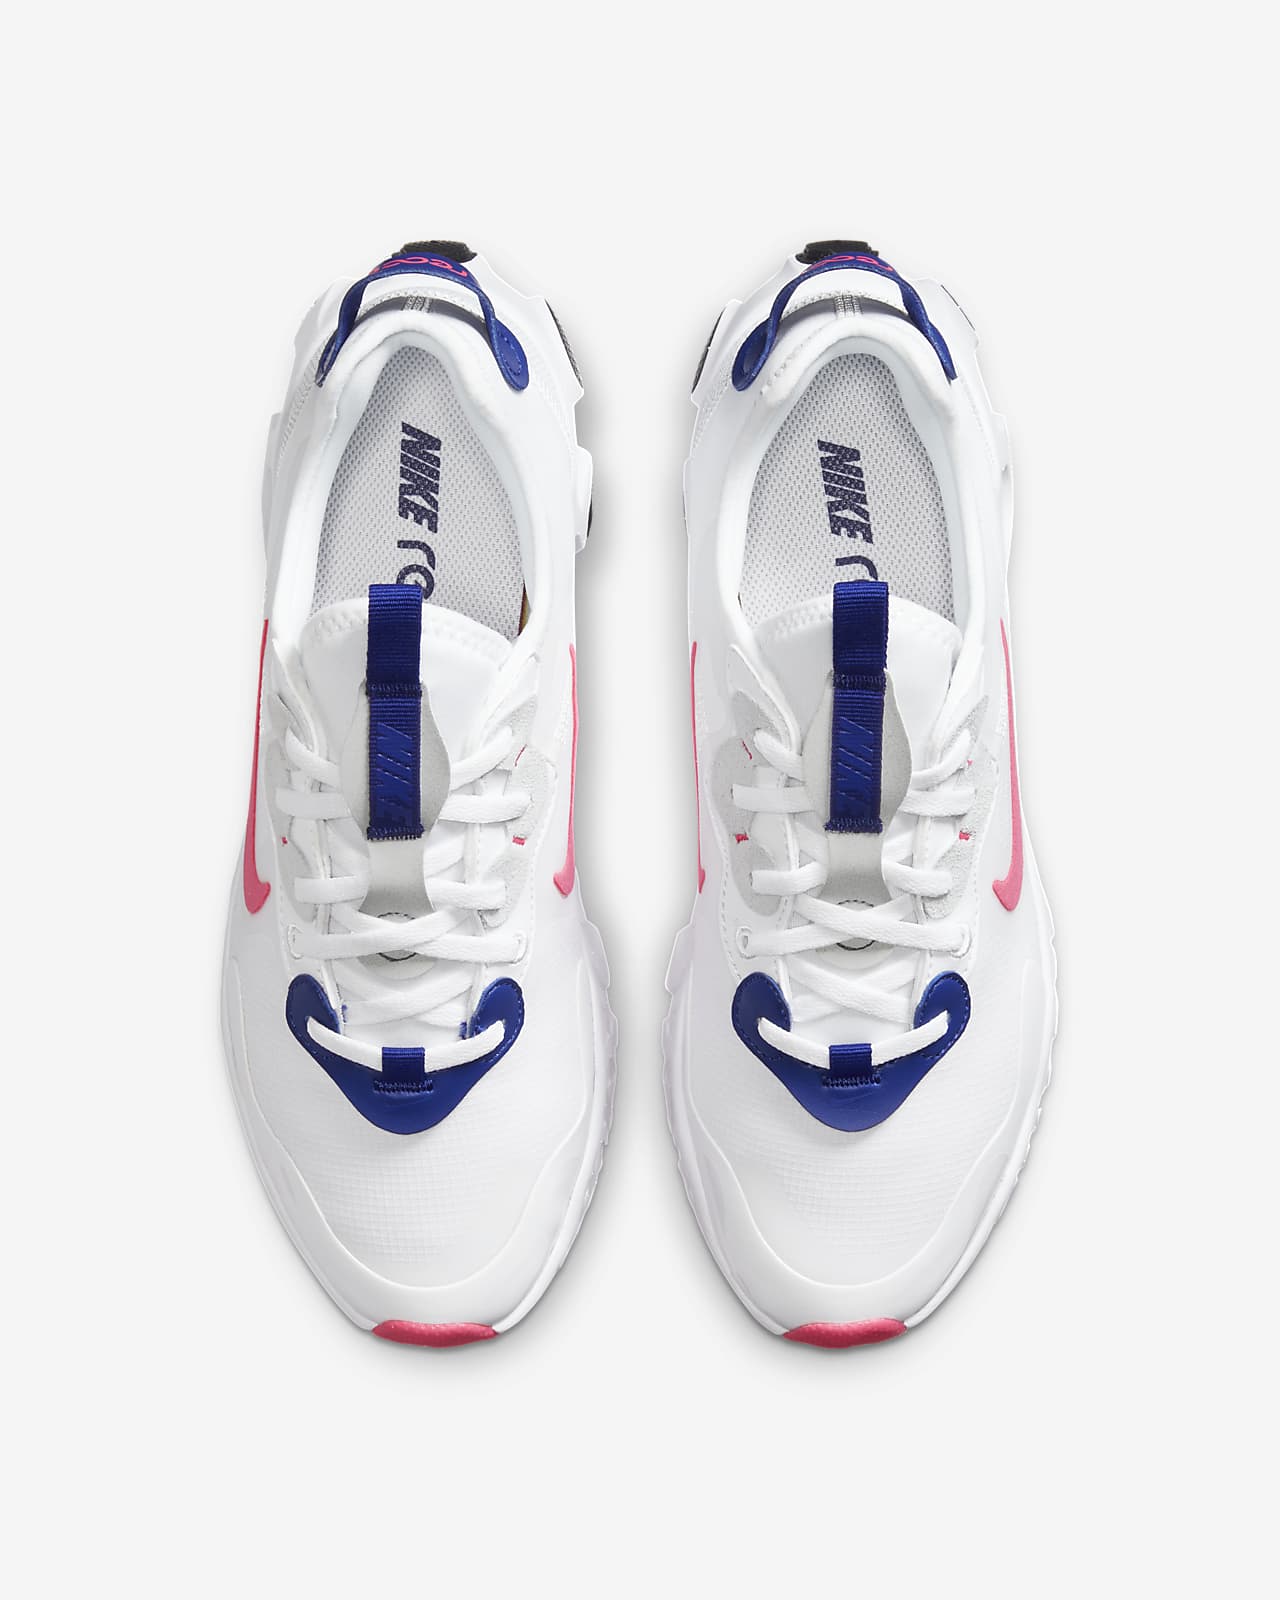 Nike React Art3mis Women's Shoe